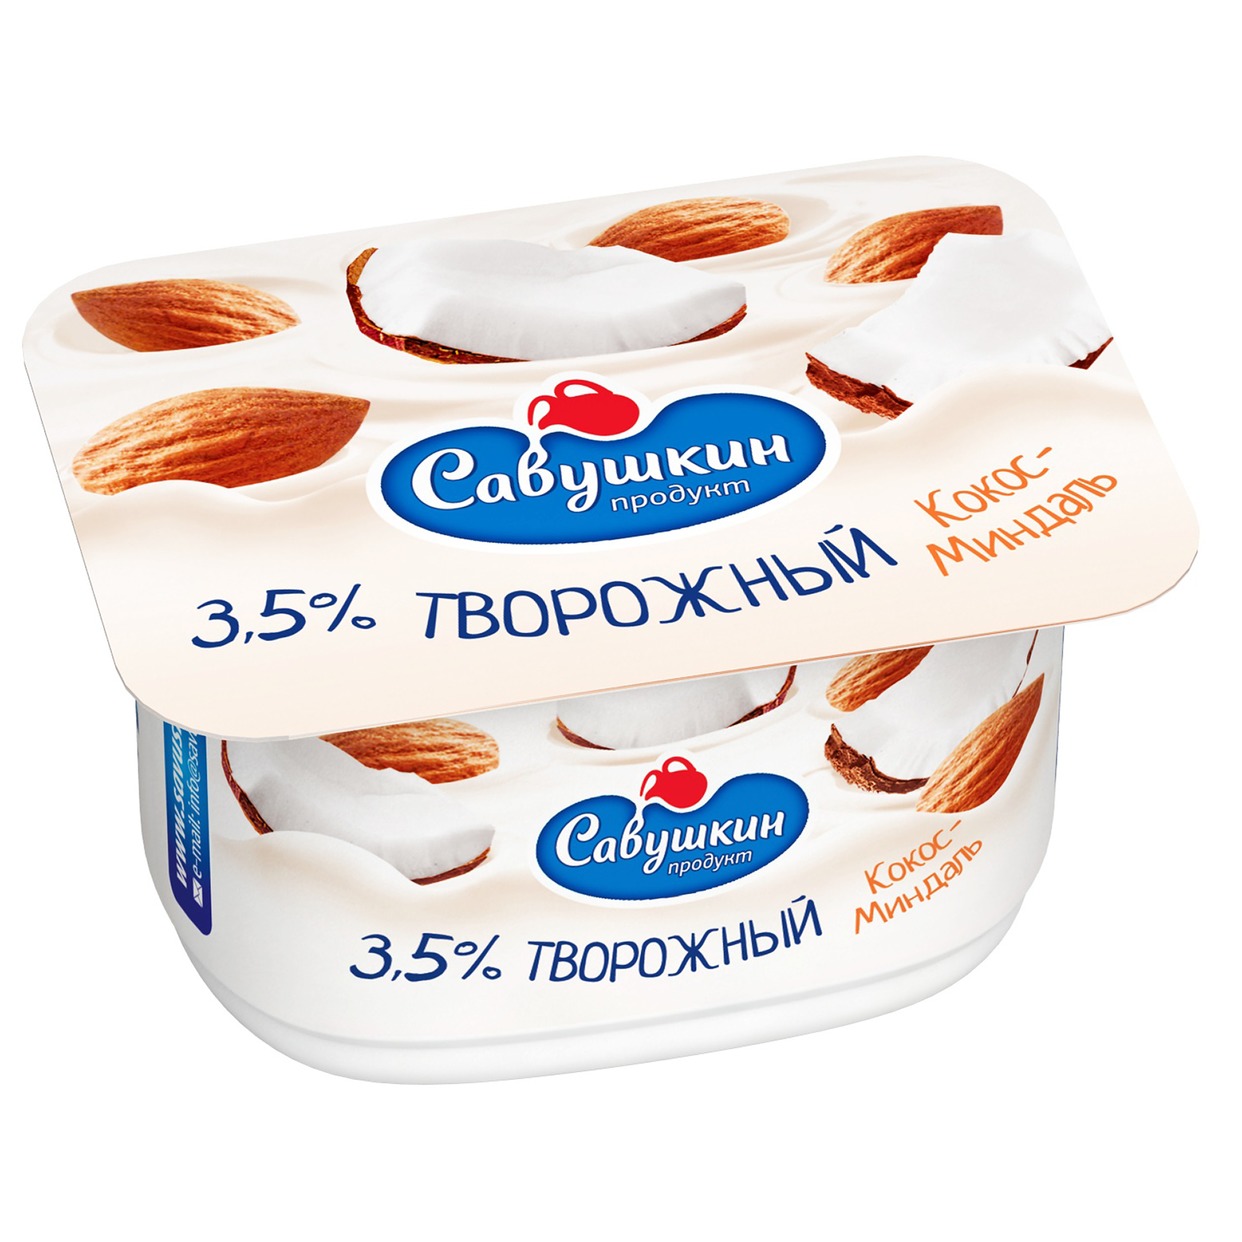 Паста Савушкин Продукт творожная десертная кокос-миндаль 3,5% 120г по акции в Пятерочке